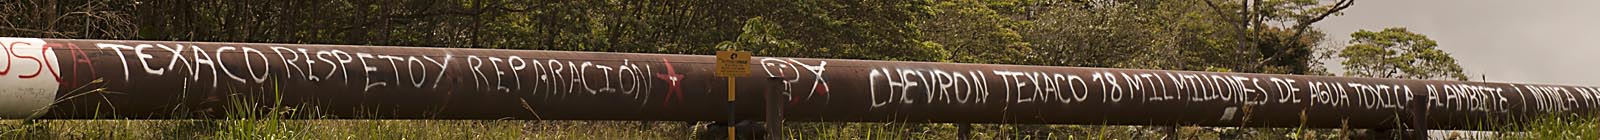 Ecuador pipeline - Banner